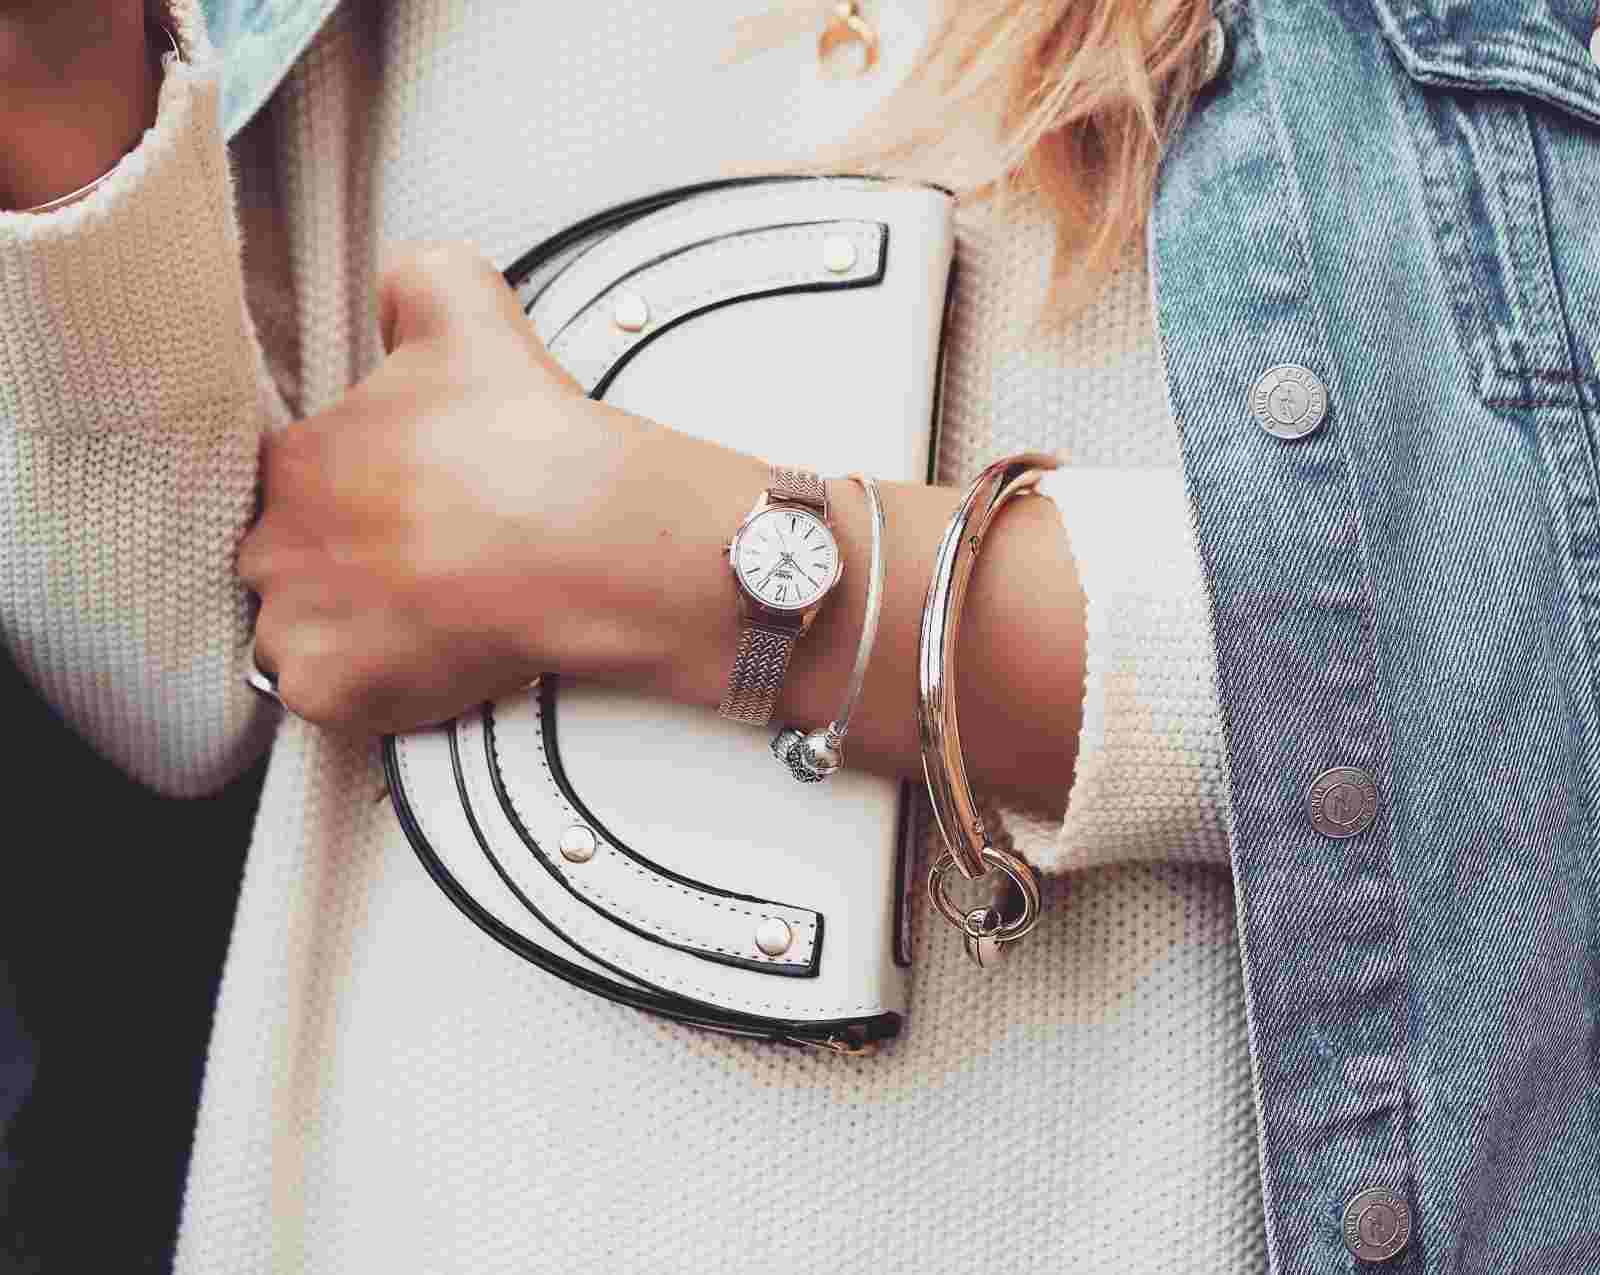 Bracelet Handbag Uhr Knit Pullover Jeans Jacket Oversized Fashion trends blonde hair